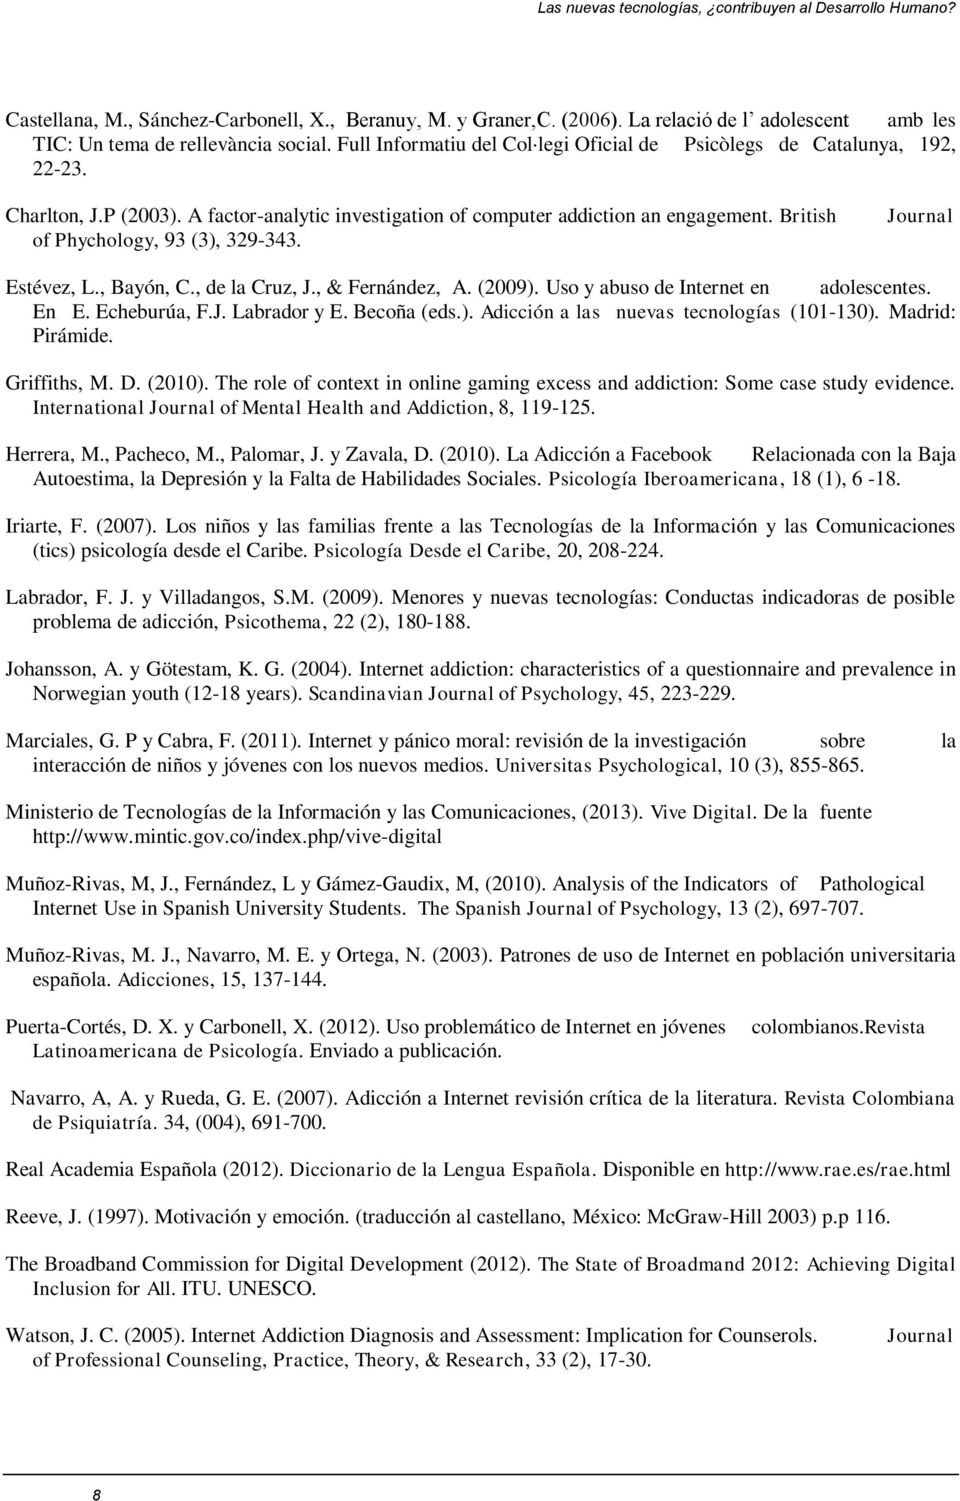 British of Phychology, 93 (3), 329-343. Journal Estévez, L., Bayón, C., de la Cruz, J., & Fernández, A. (2009). Uso y abuso de Internet en adolescentes. En E. Echeburúa, F.J. Labrador y E.